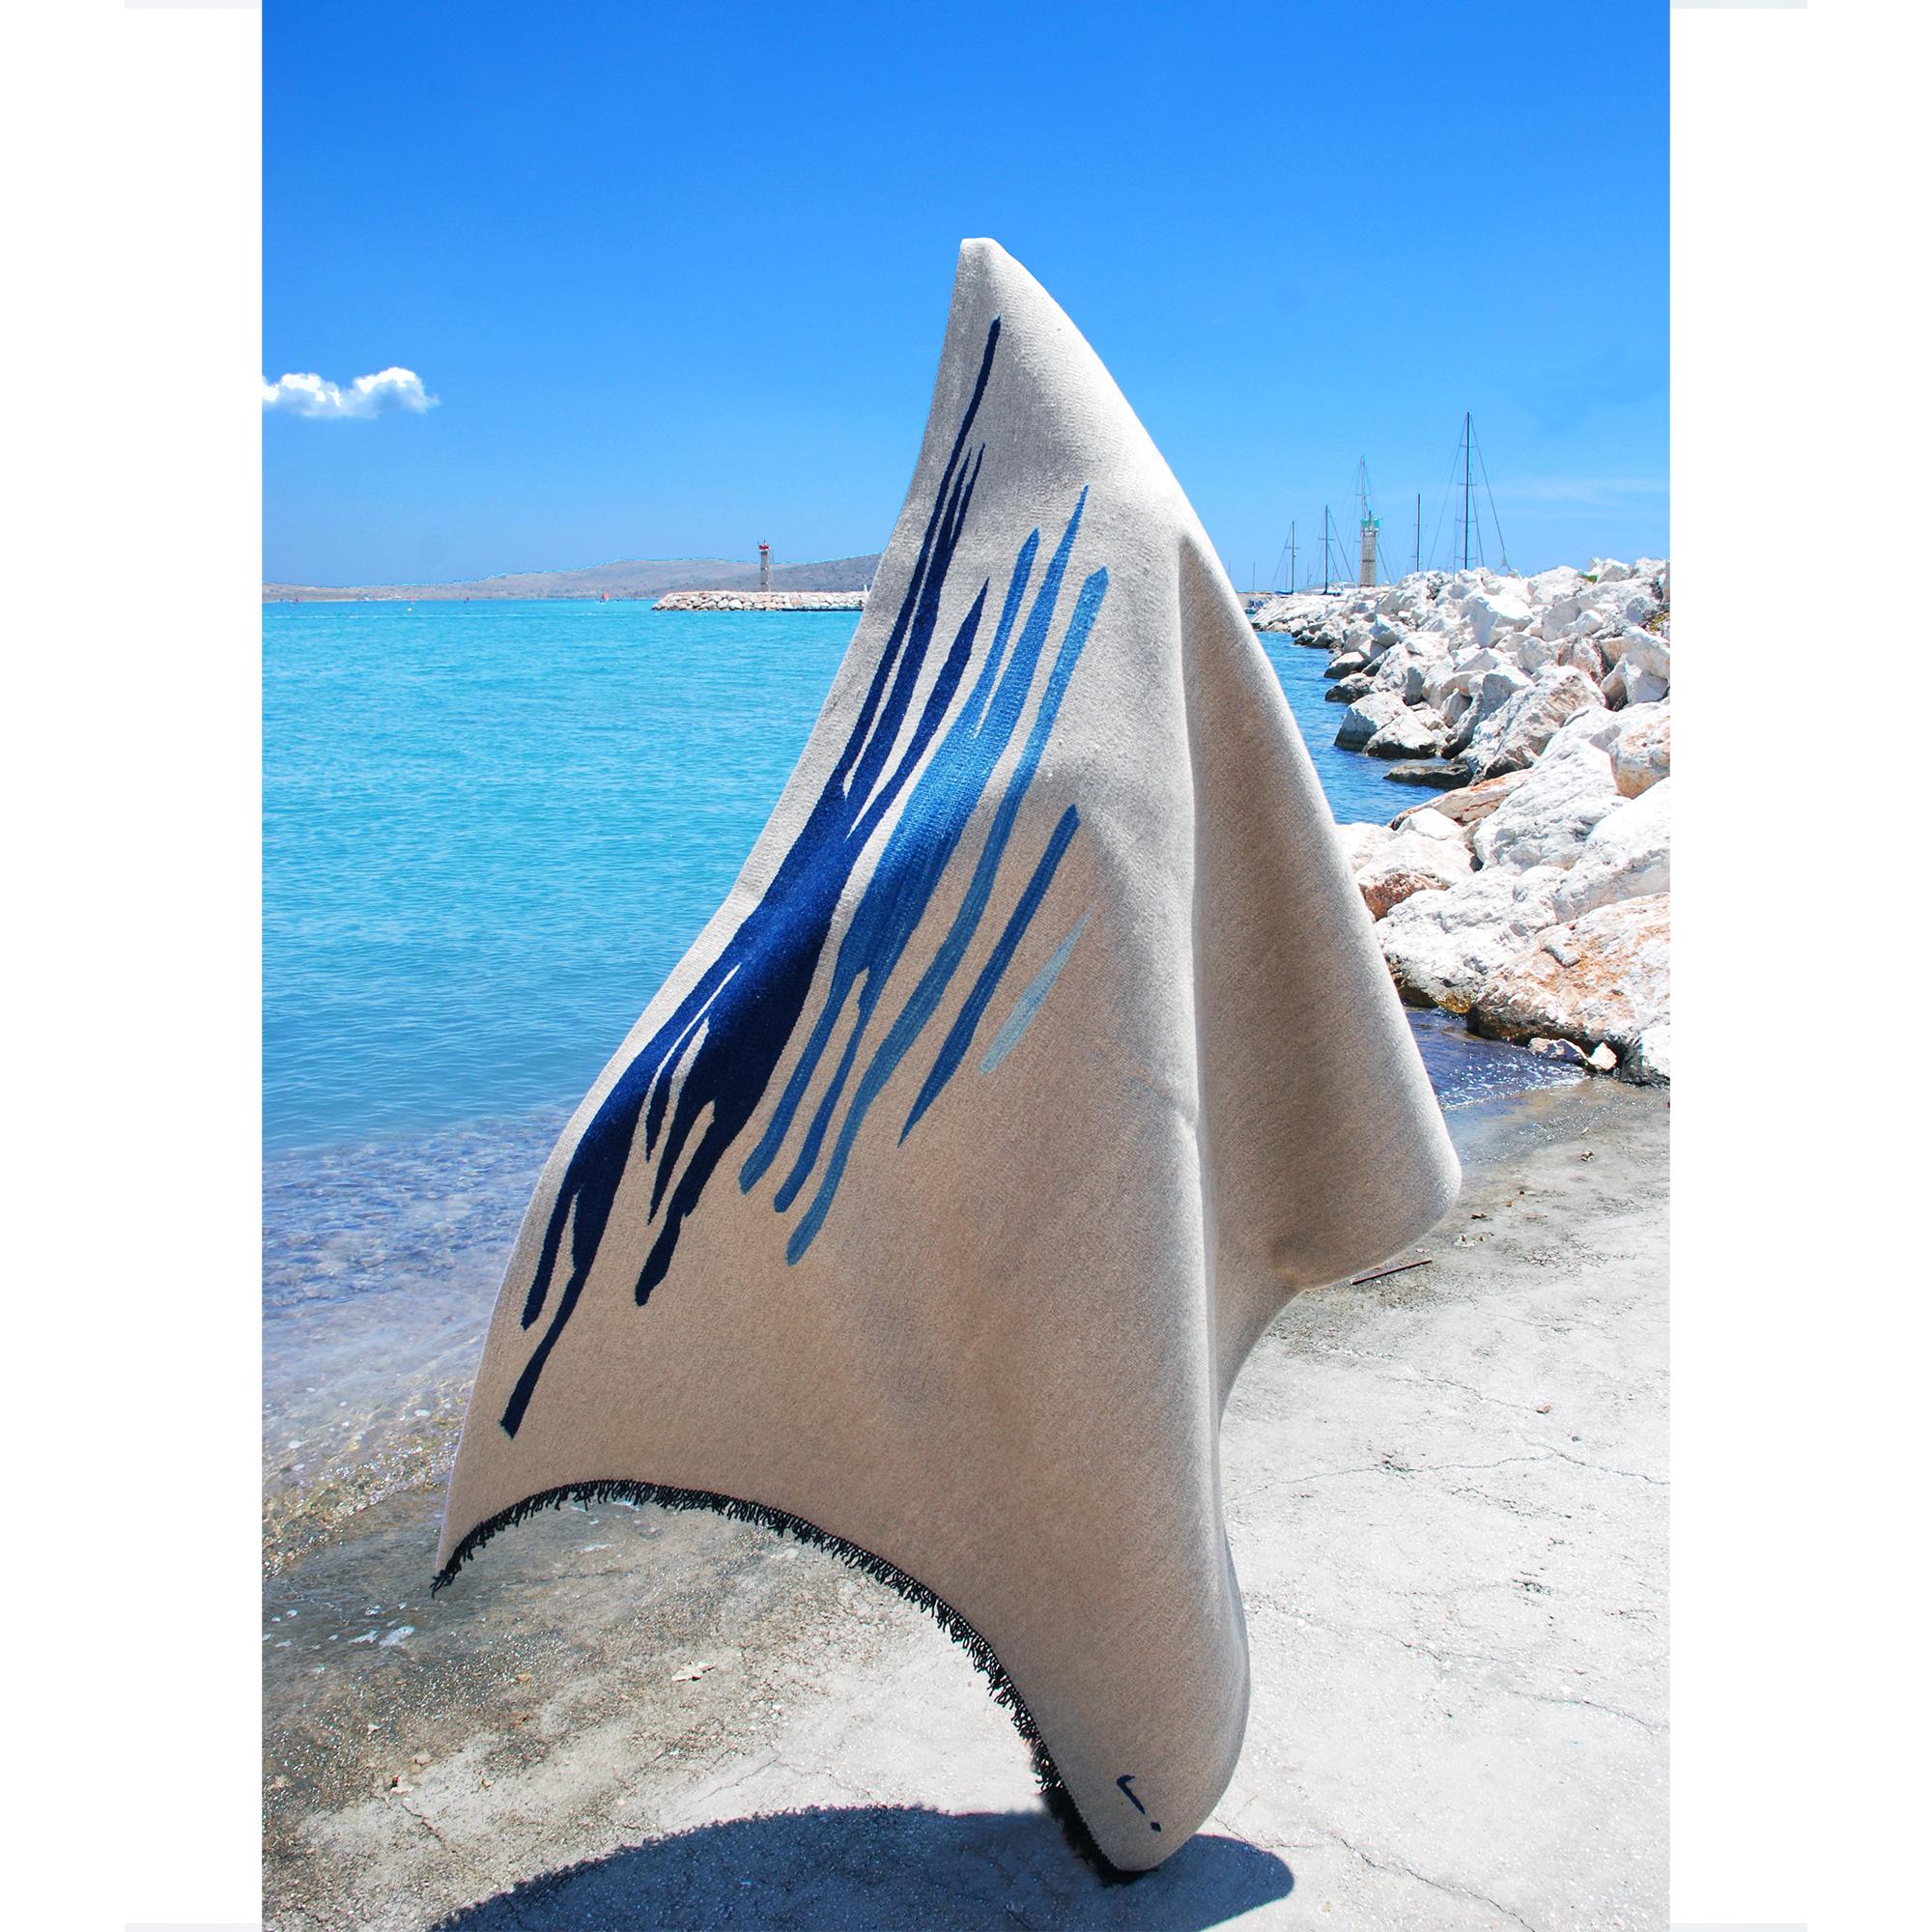 Le tapis kilim Ege No 1 fait partie d'une série de kilims qui reflètent une admiration pour l'expressivité visuelle et émotionnelle de la surface de la mer, avec ses mouvements fluides et ses reflets de couleurs qui créent un effet relaxant sur la